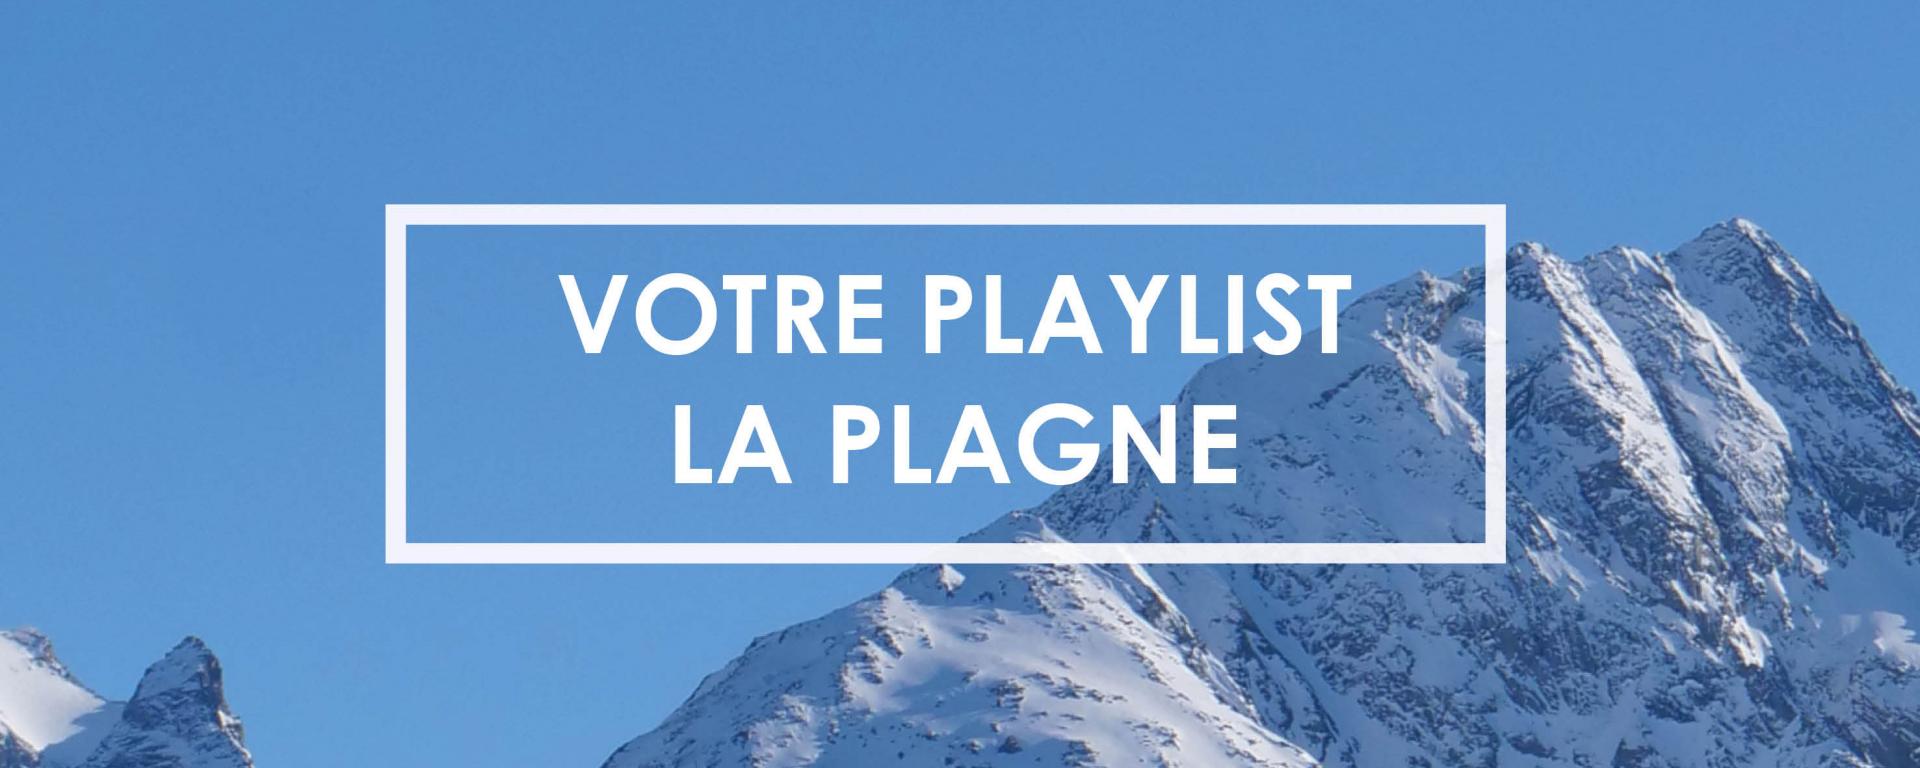 Playlist La Plagne